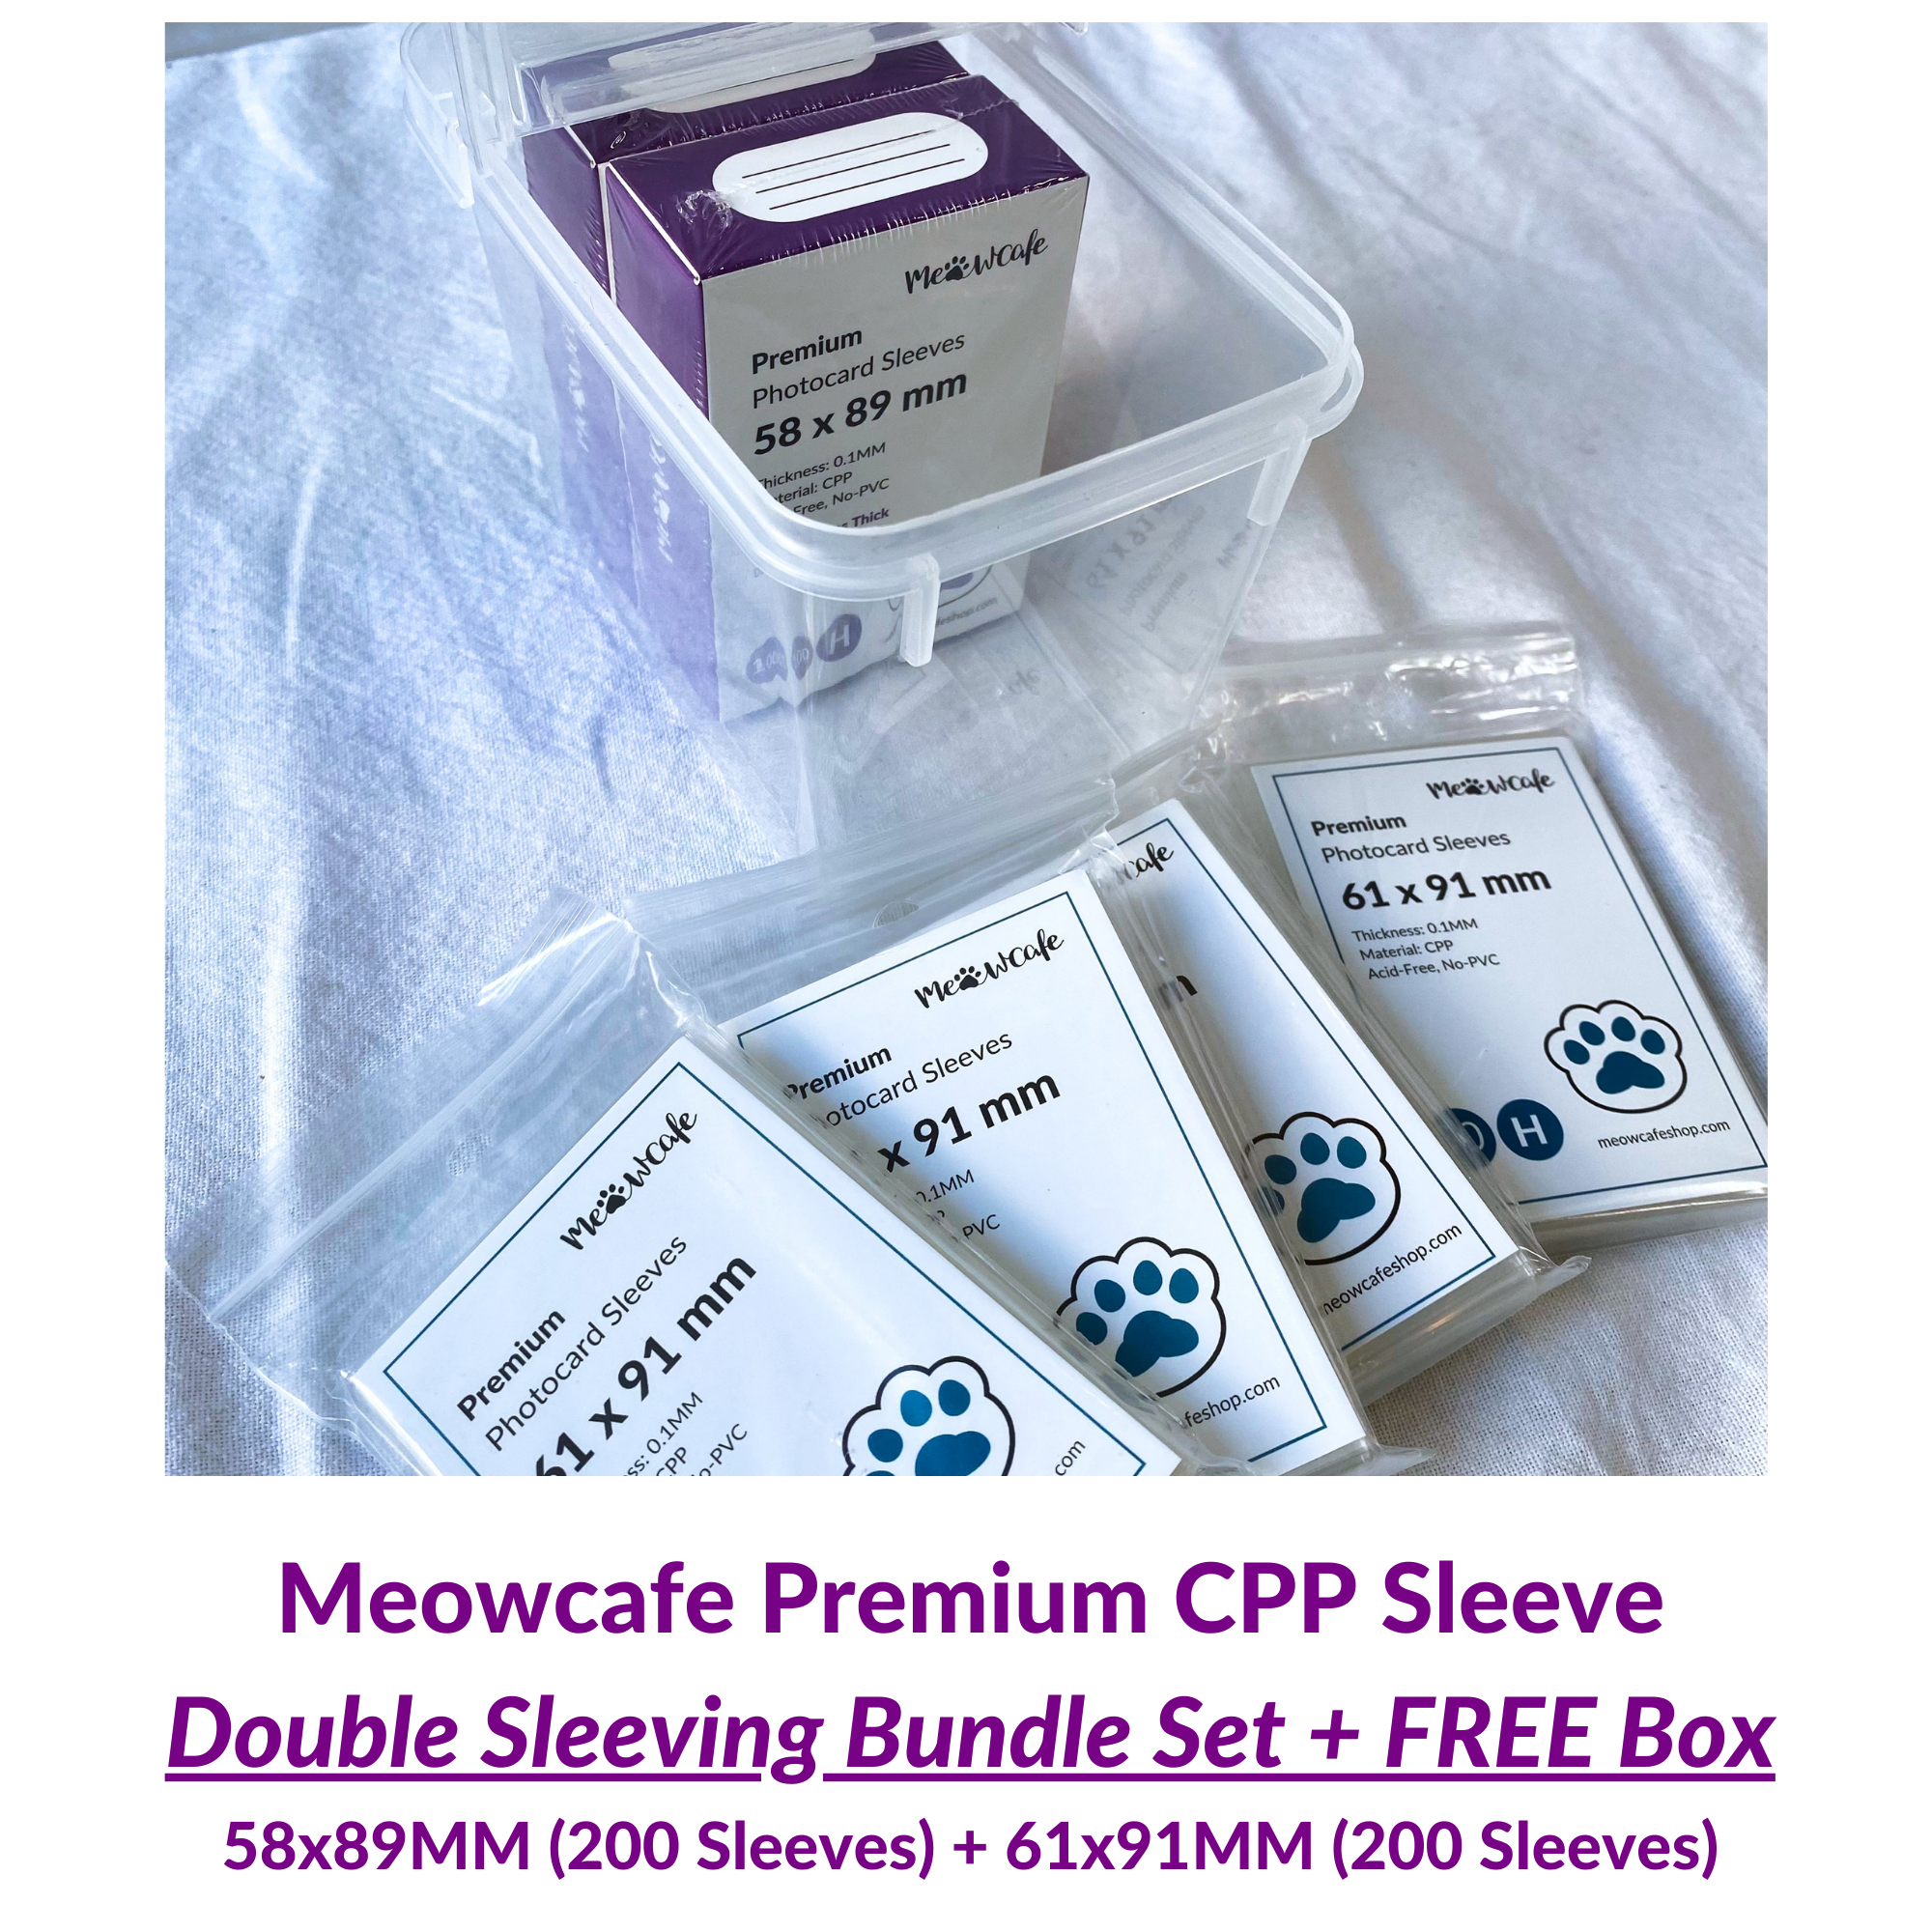 [Valued Bundle] Meowcafe Premium CPP Card Sleeve 400 Sleeves Double Sleeving Bundle Set